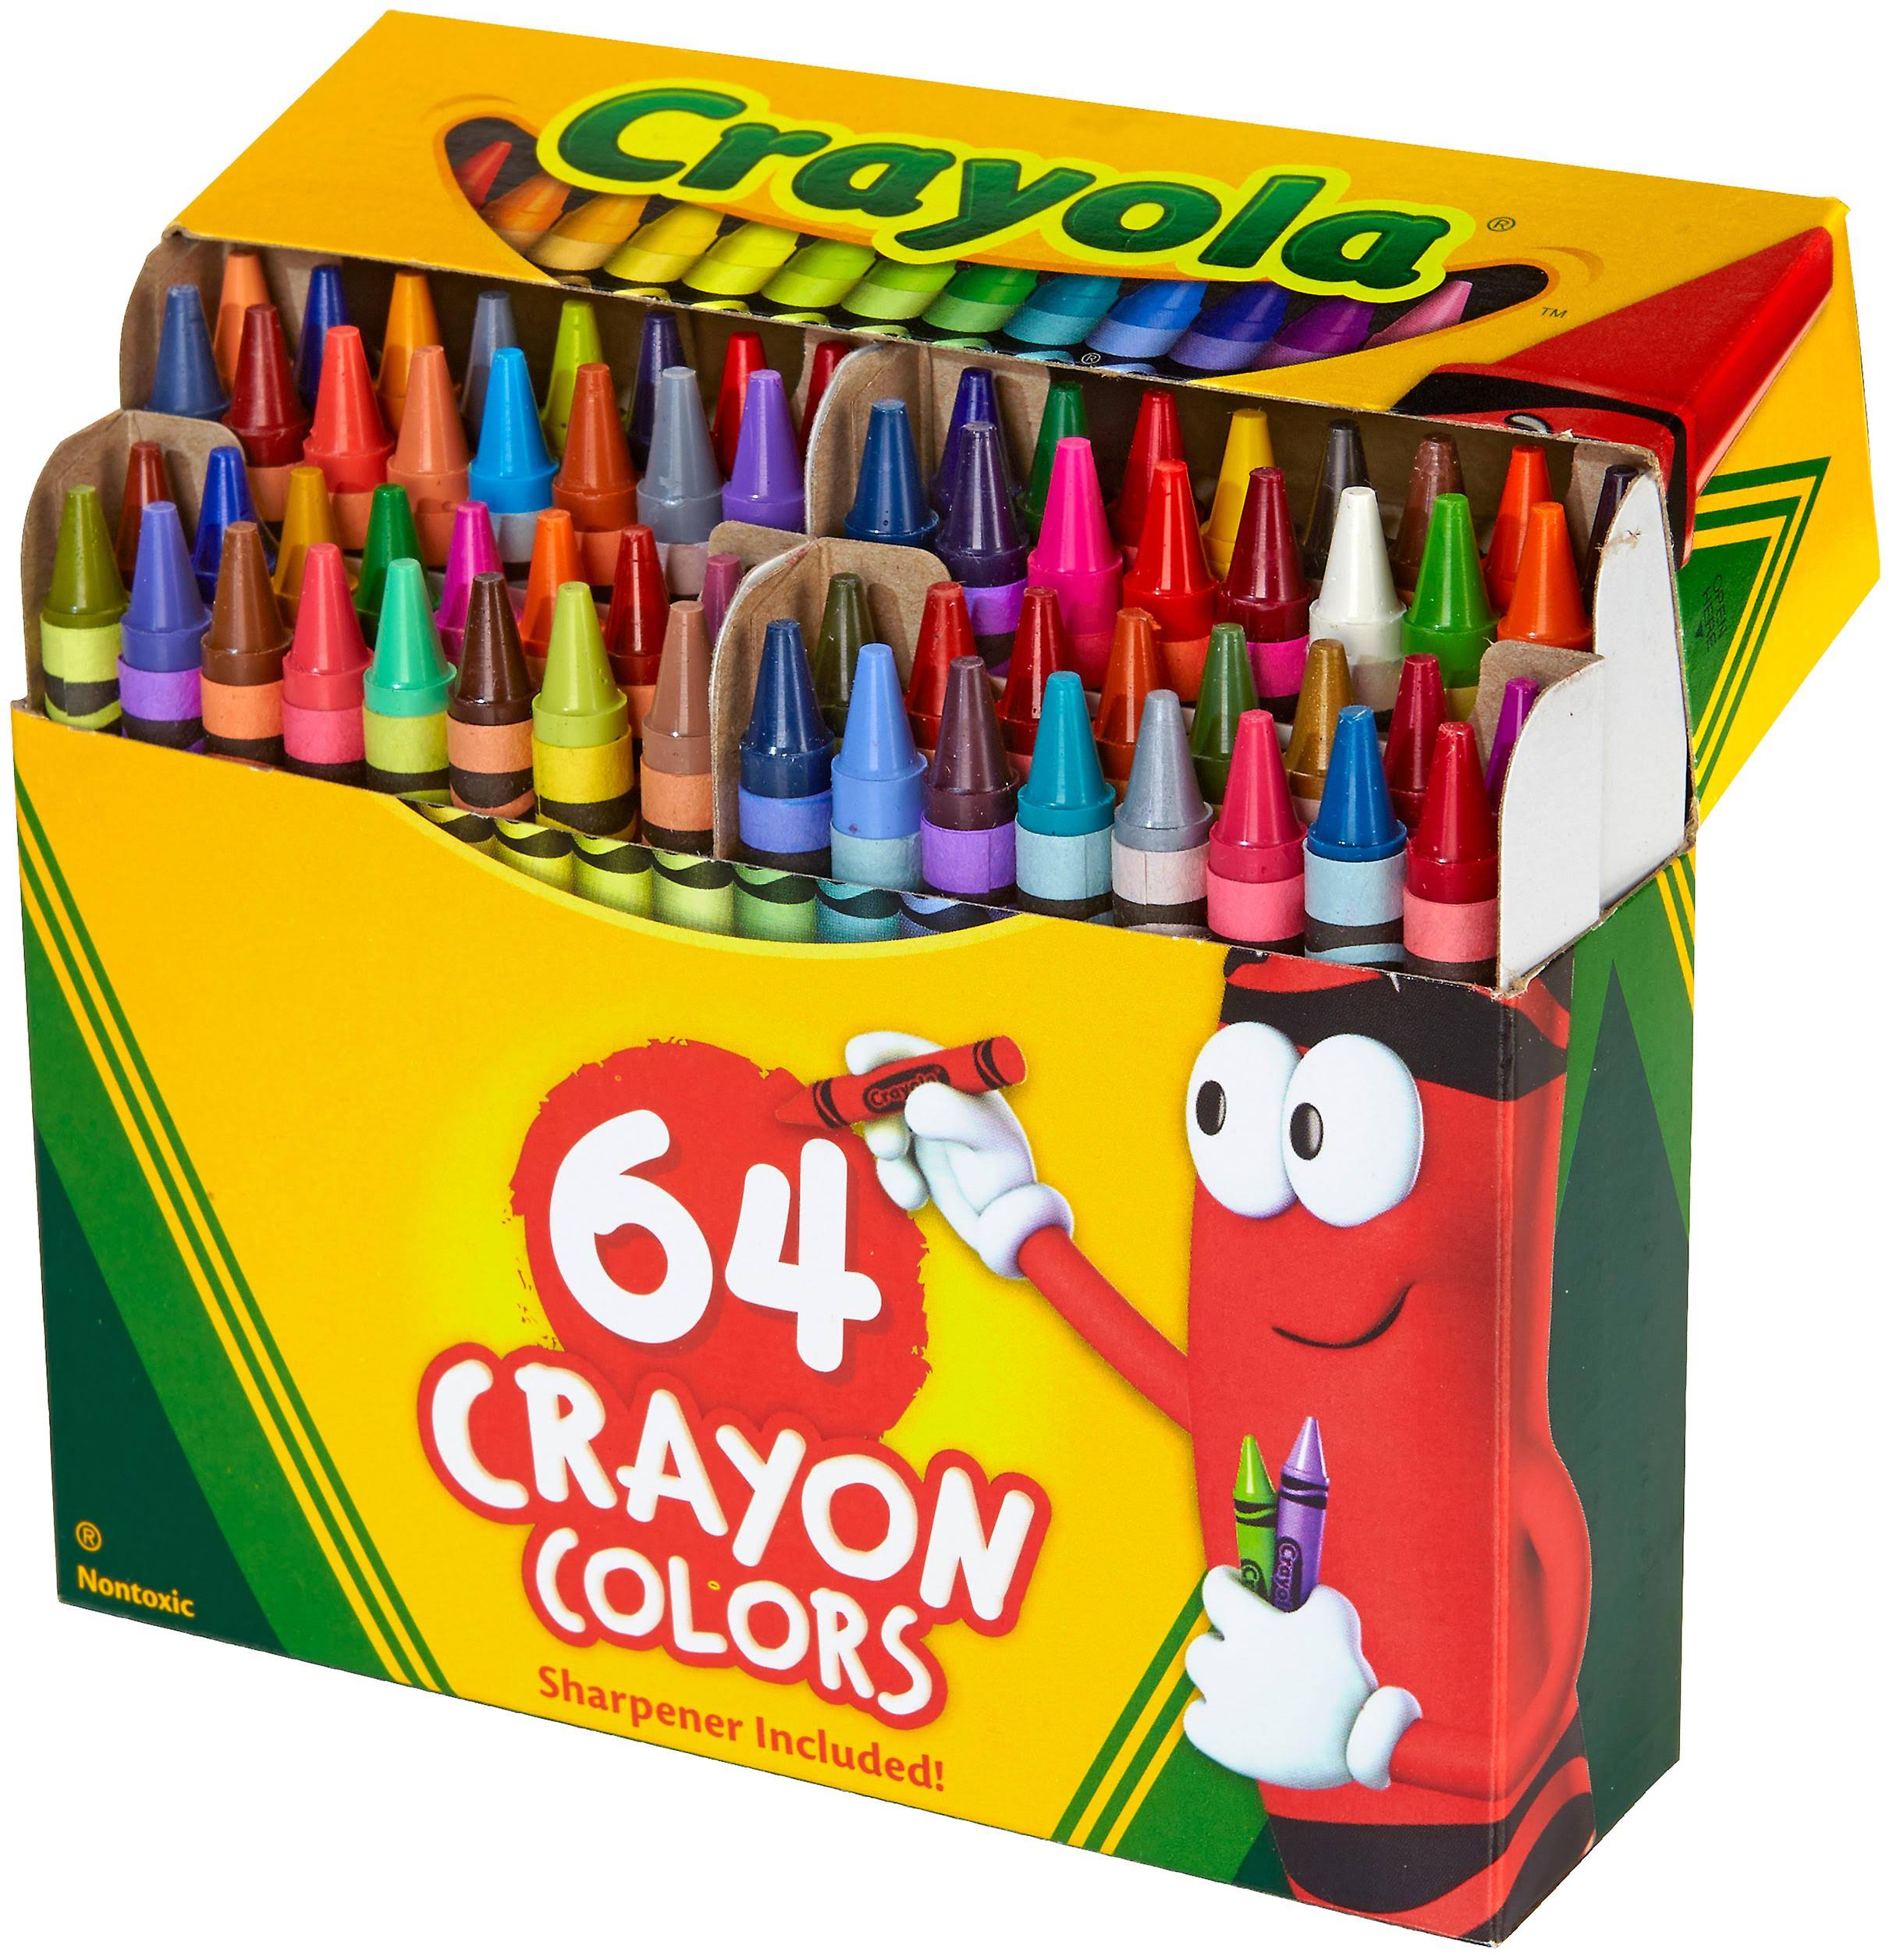 Crayola Crayons - 64 Crayons